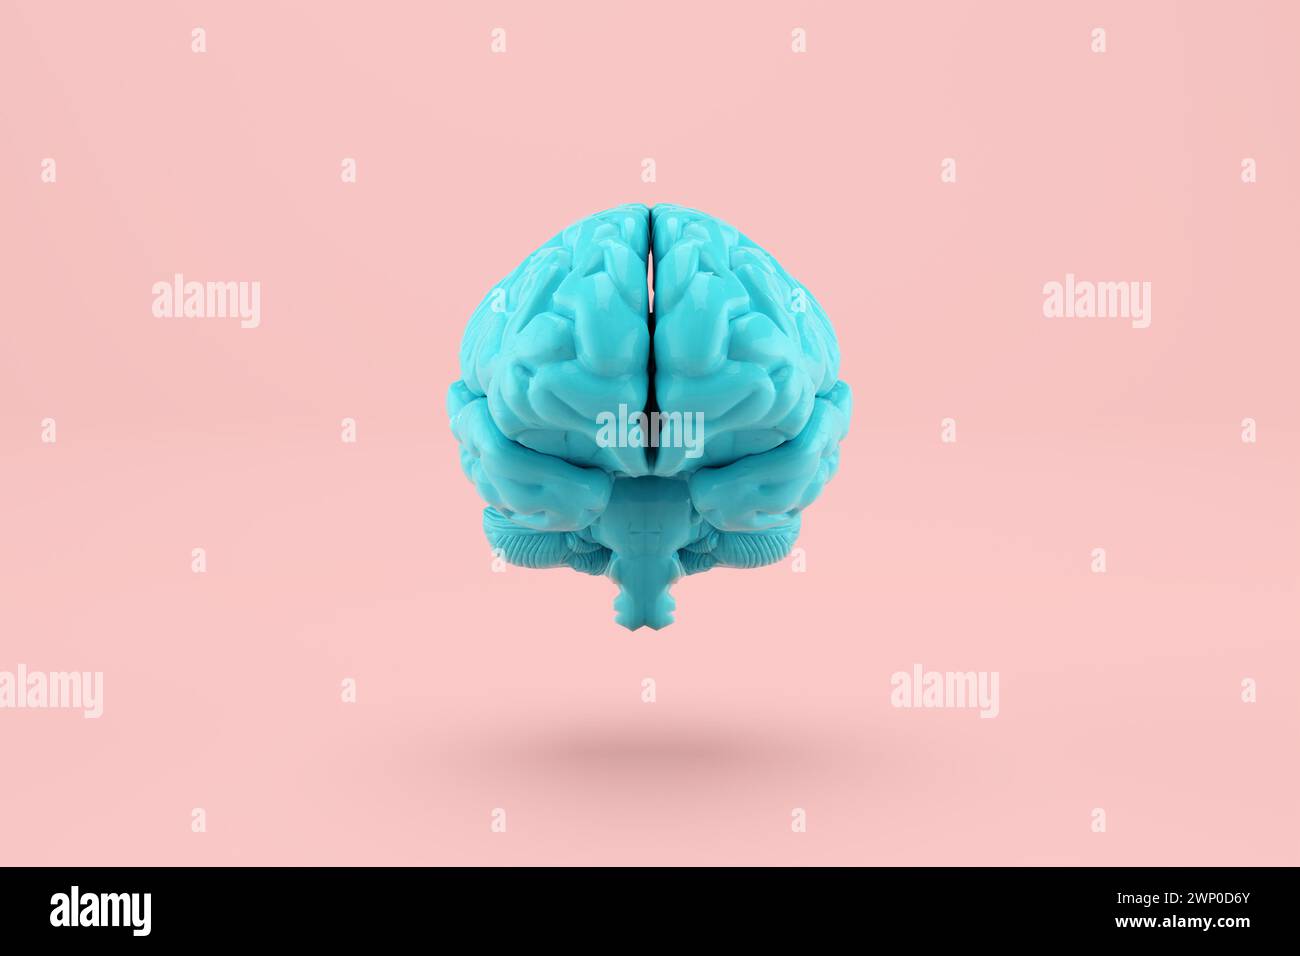 Cerveau humain de couleur bleue flottant sur fond rose. Pensée, santé mentale, neurologie et intelligence artificielle concepts. Rendu 3D. Banque D'Images